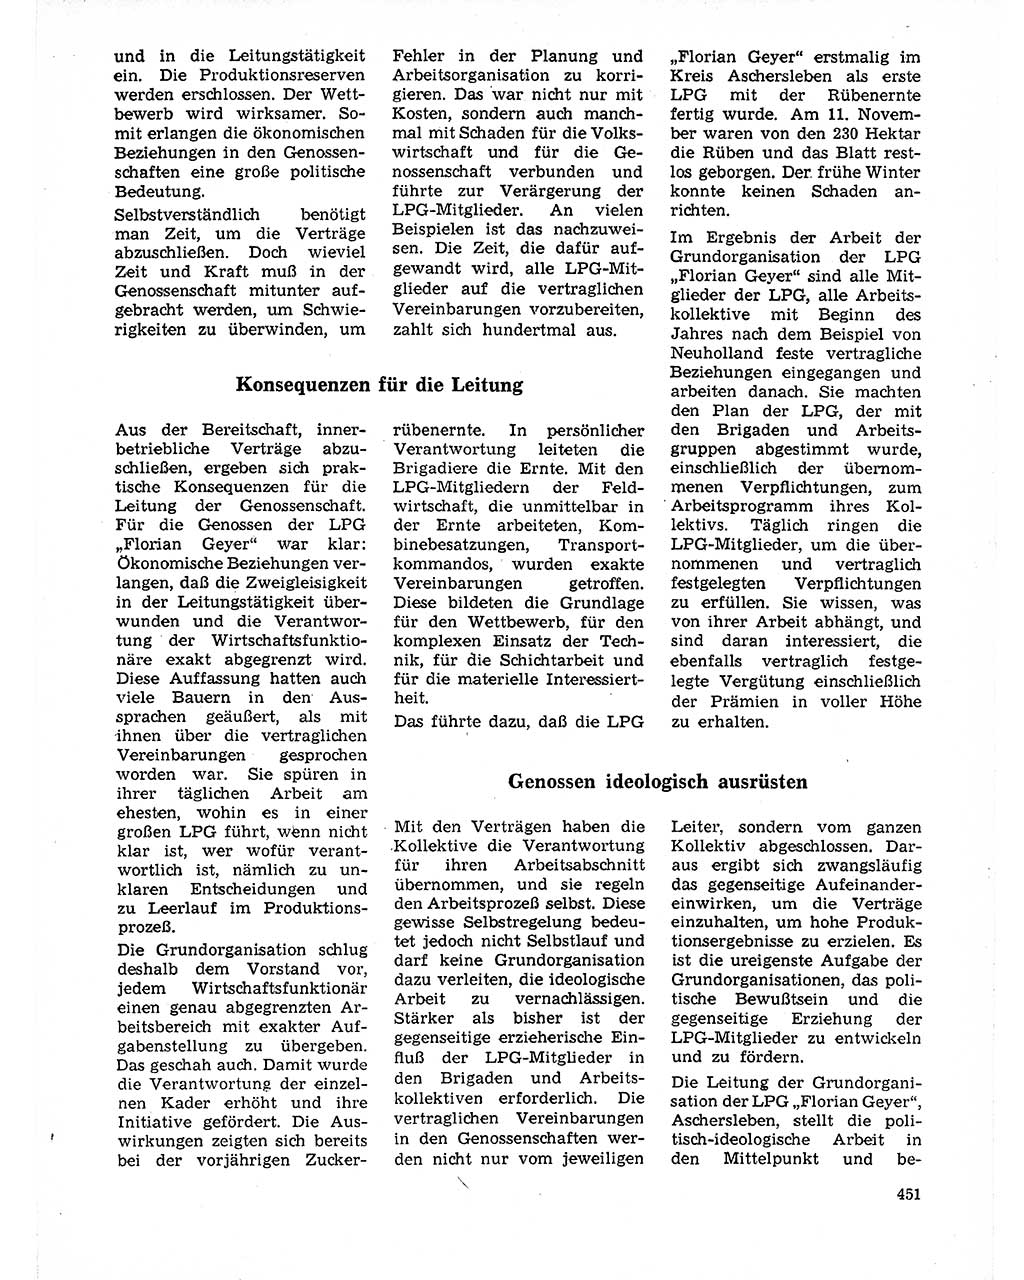 Neuer Weg (NW), Organ des Zentralkomitees (ZK) der SED (Sozialistische Einheitspartei Deutschlands) für Fragen des Parteilebens, 21. Jahrgang [Deutsche Demokratische Republik (DDR)] 1966, Seite 451 (NW ZK SED DDR 1966, S. 451)